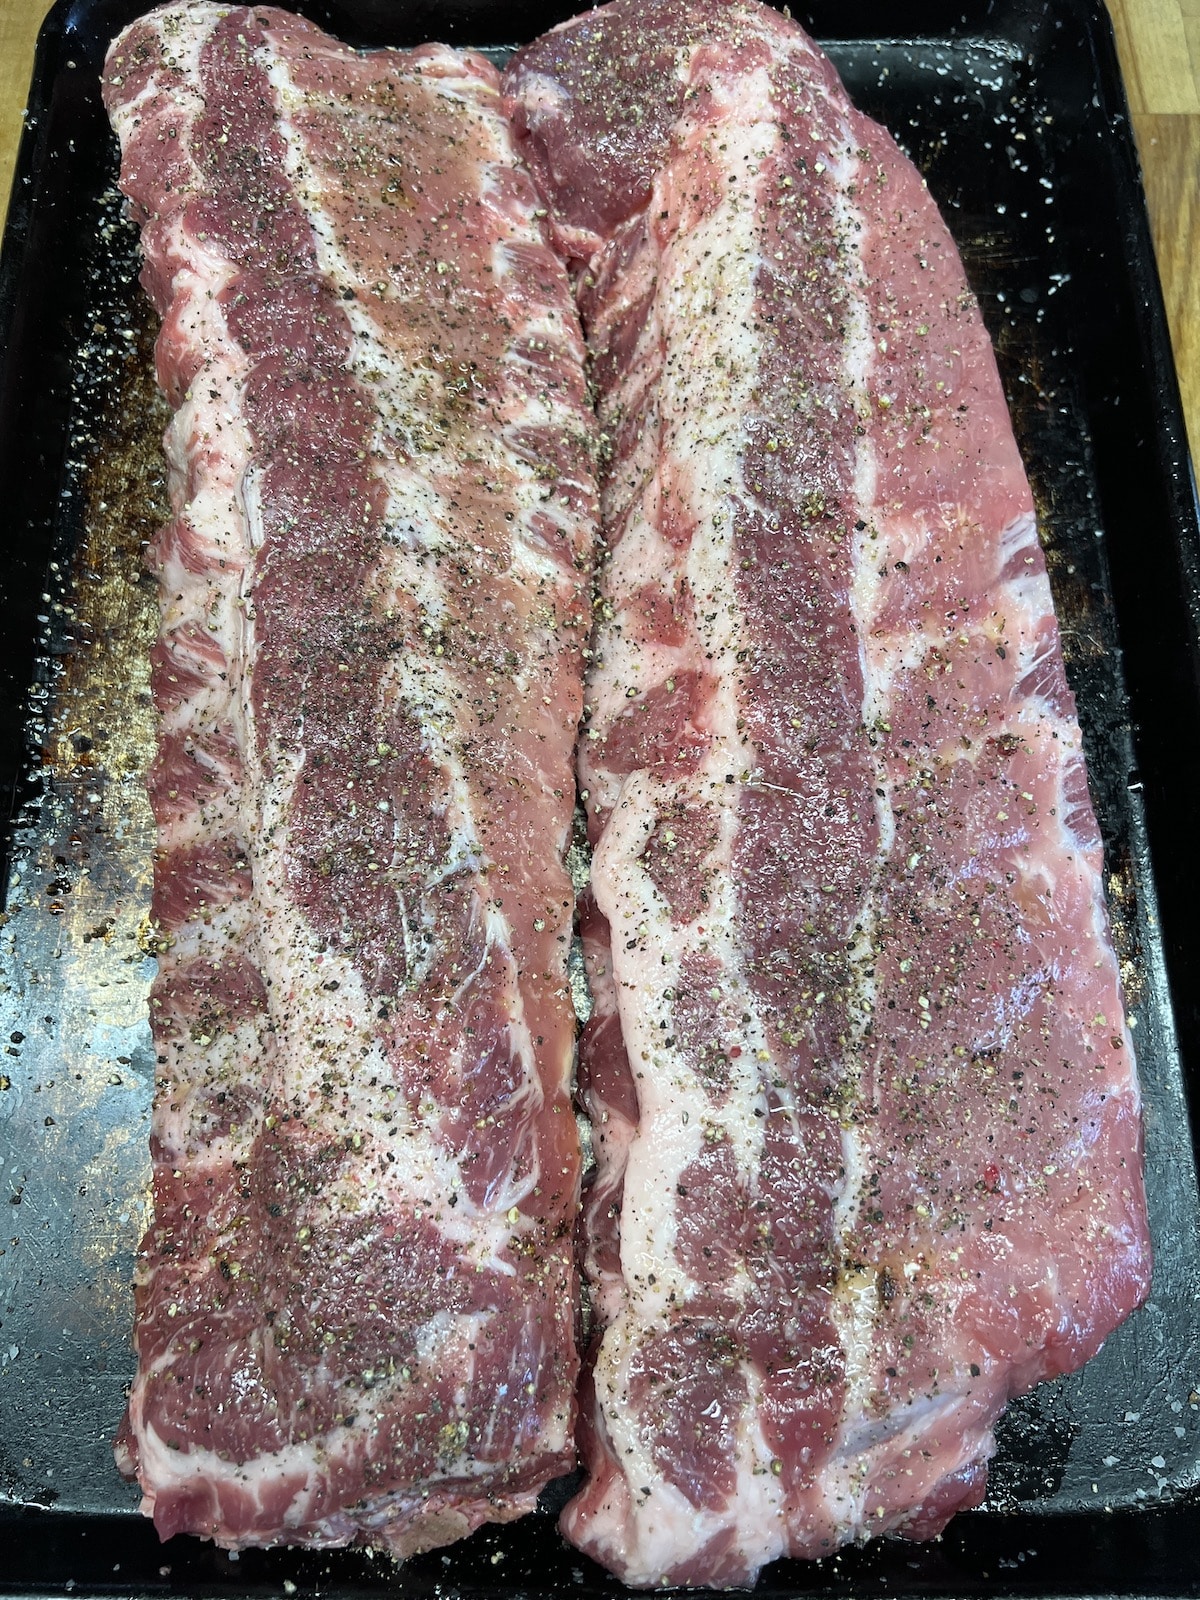 2 racks ribs on a sheet pan with salt & pepper.